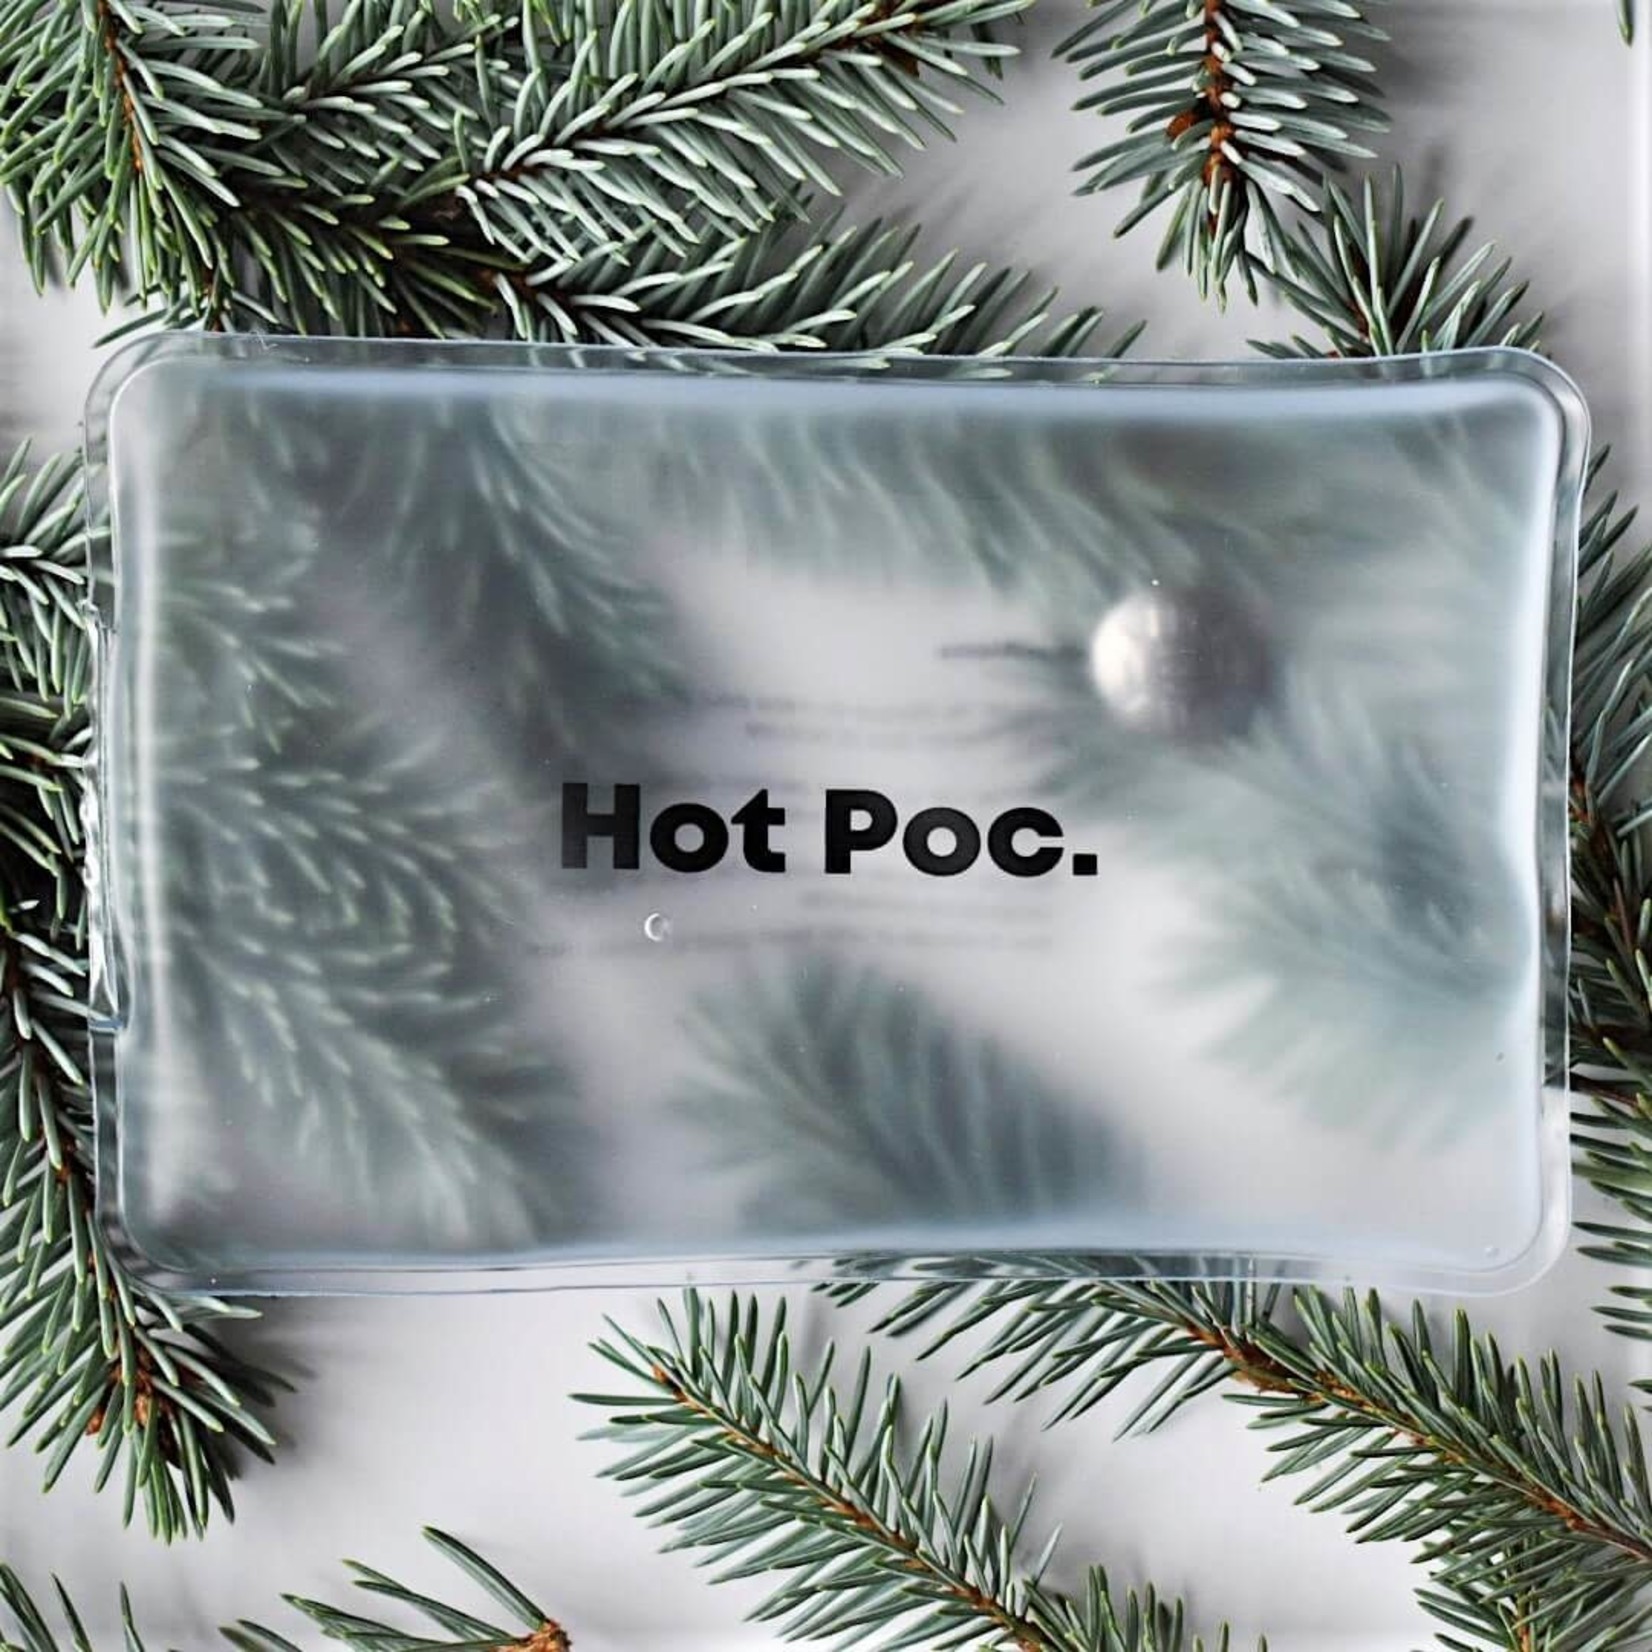 Hot Poc Boîtier (2 réguliers et XL) – Chauffe-mains réutilisables Hot Poc